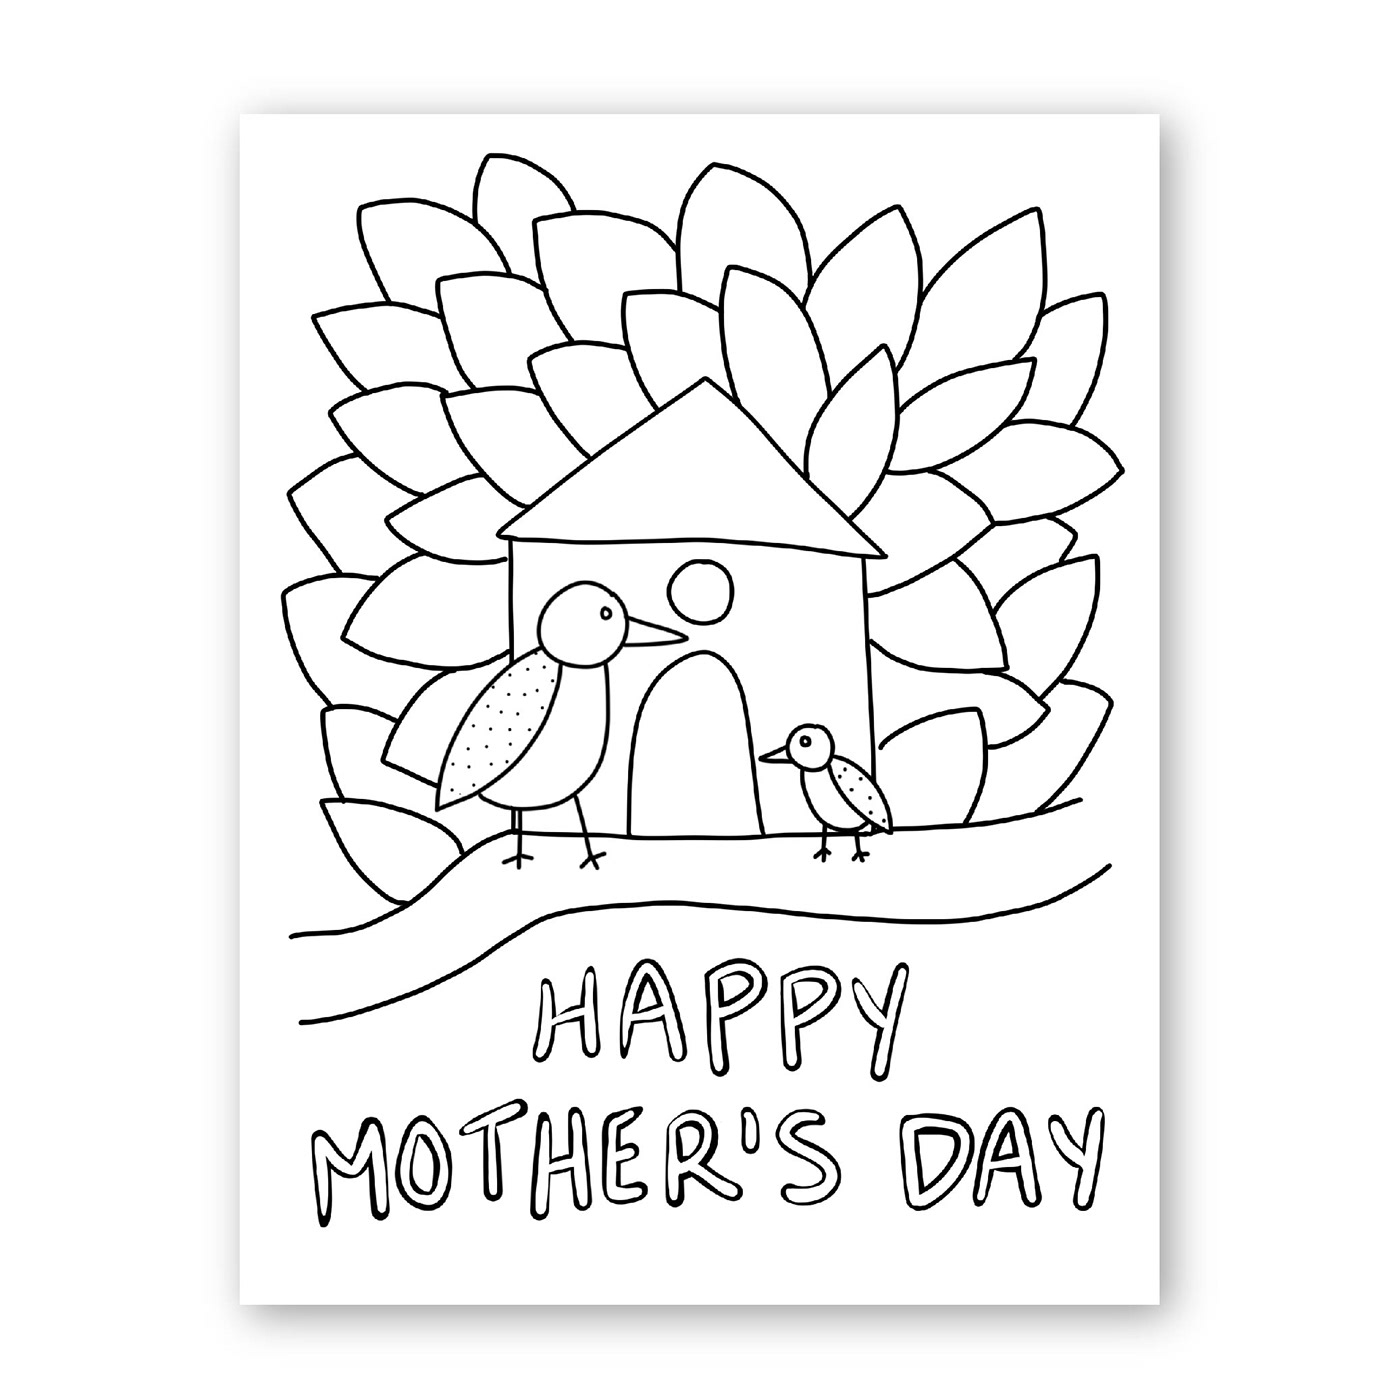 athomecraftproject card cardcrafts cards crafts   DigitalIllustration doodle moms mothersday